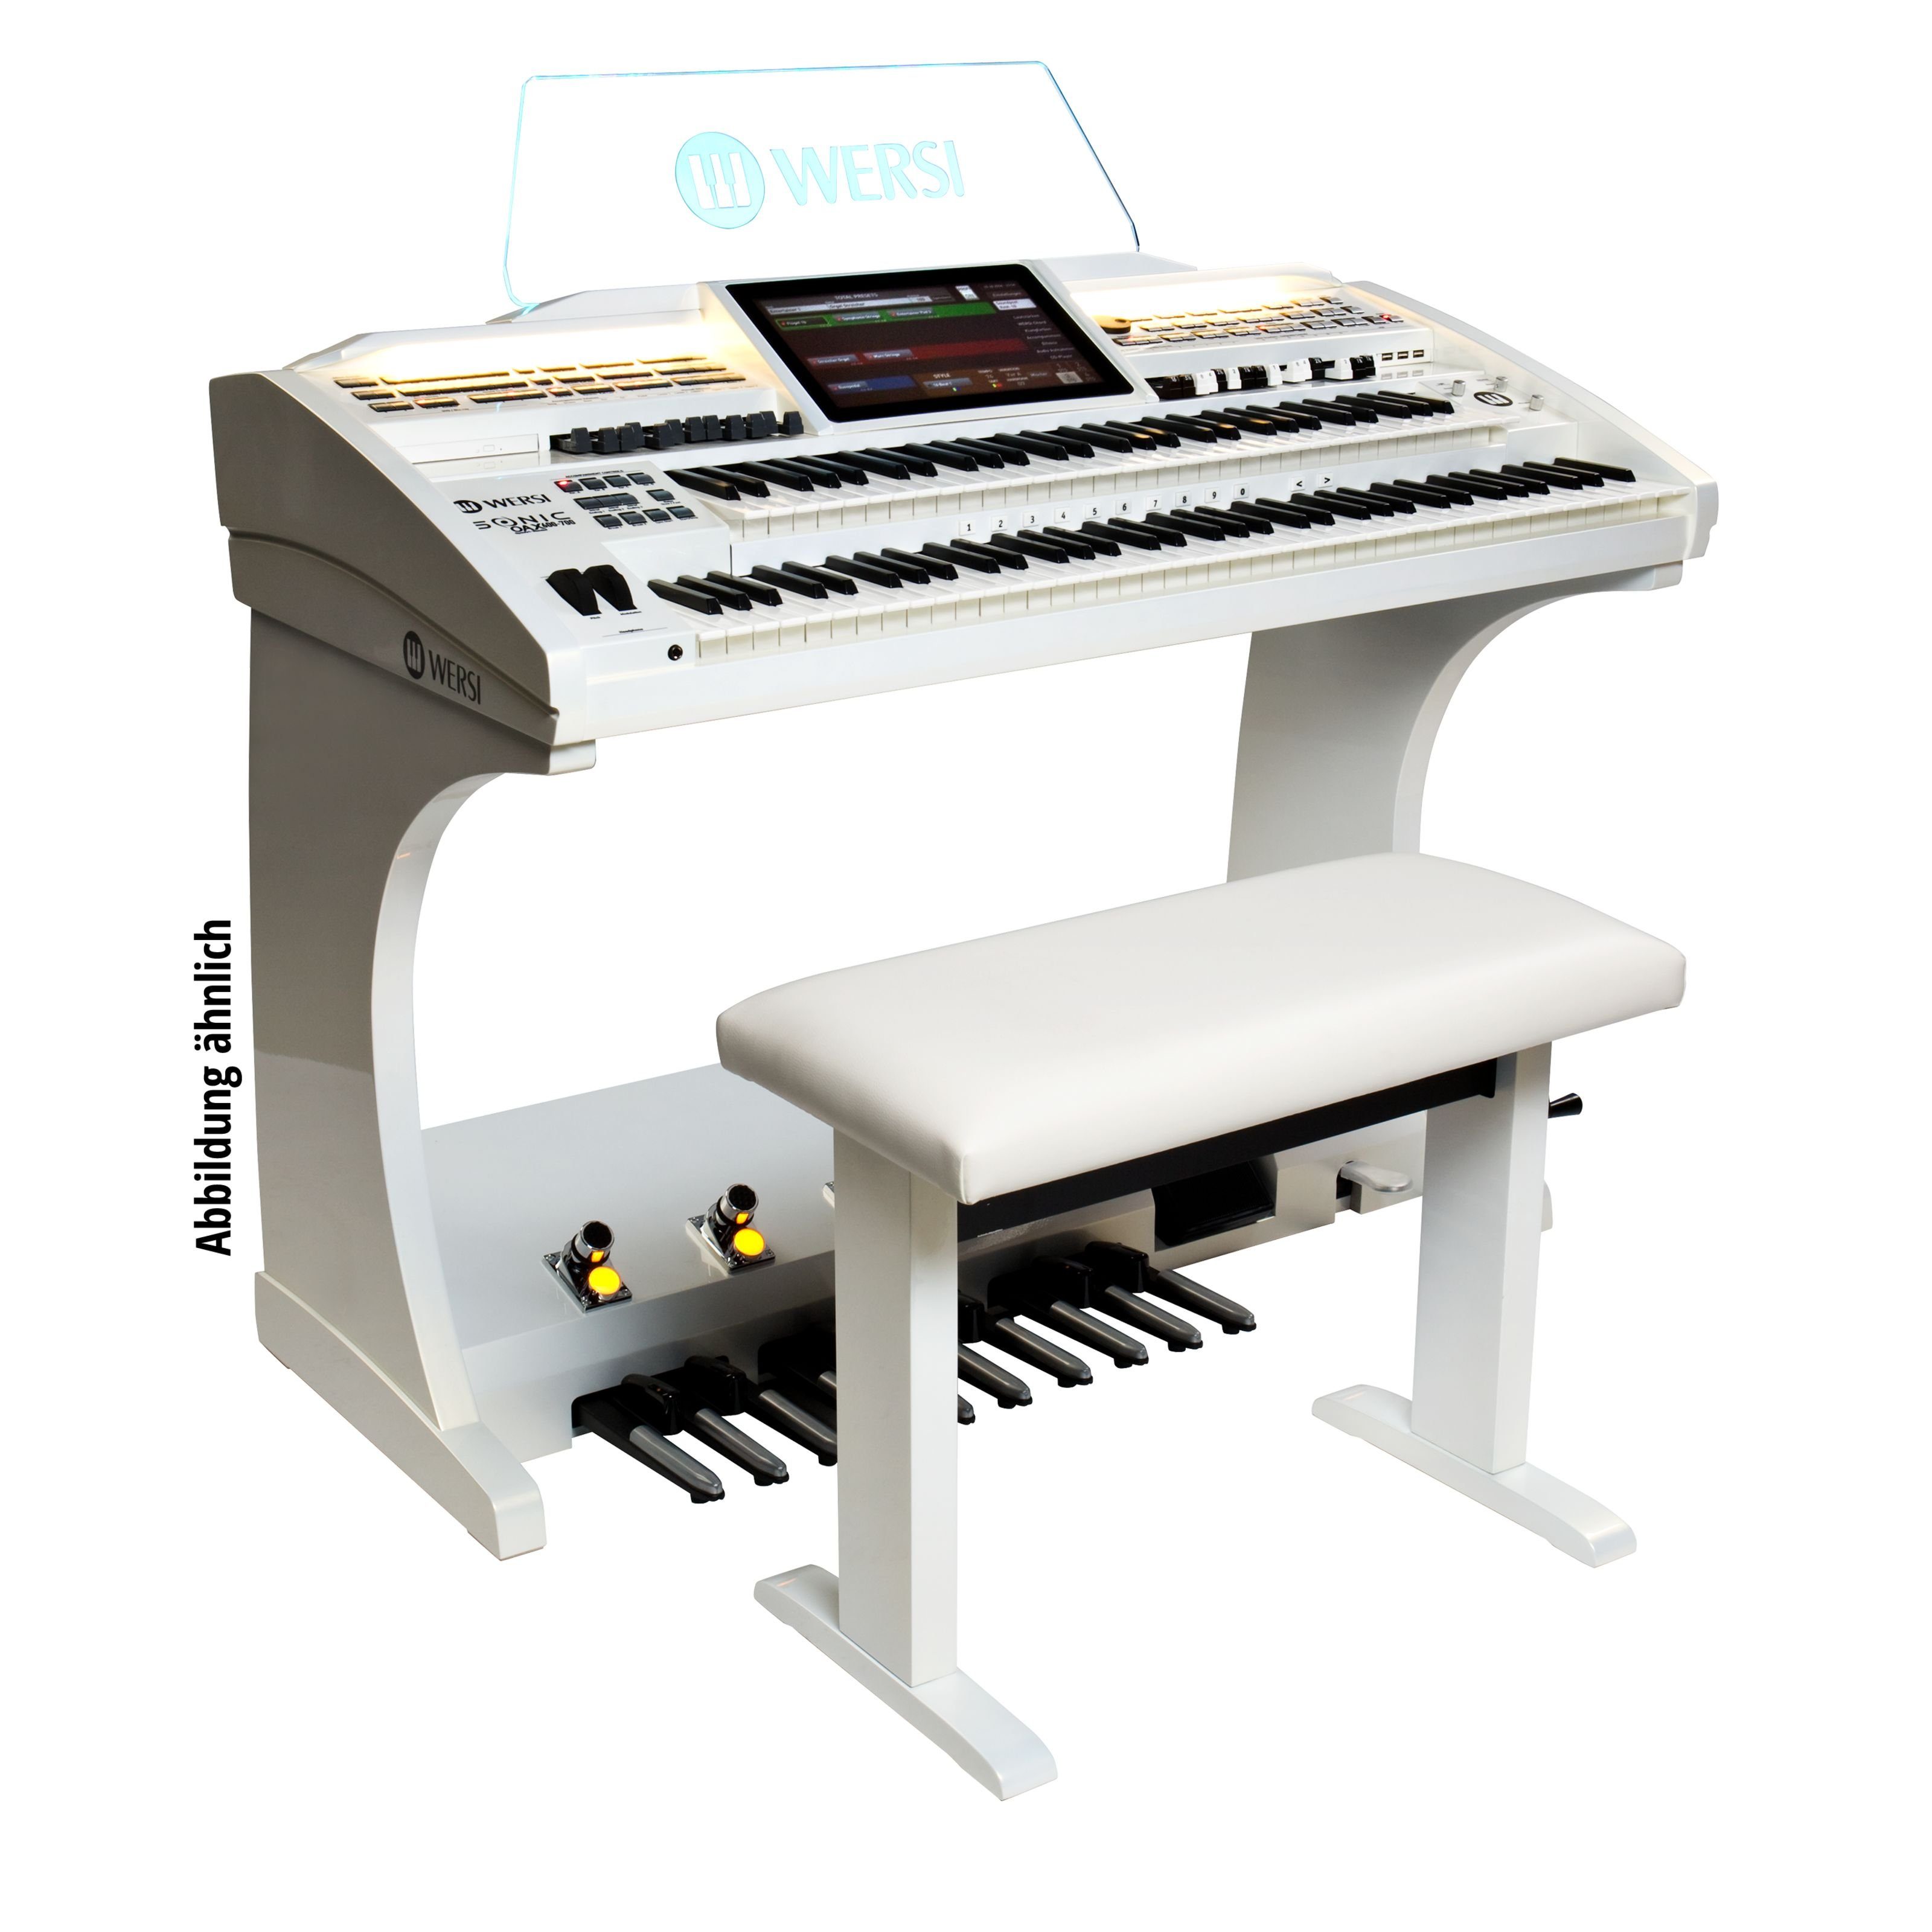 Wersi Orgel (SONIC OAX600LS Elektronische Orgel, Perlmutt Weiß, inklusive Lautsprecher und Sitzbank, Hochwertige Klangqualität, Vielfältige Spielmöglichkeiten, Orgeln, Elektronische Orgeln), SONIC OAX600LS, Elektronische Orgel, Hochwertige Klangqualität